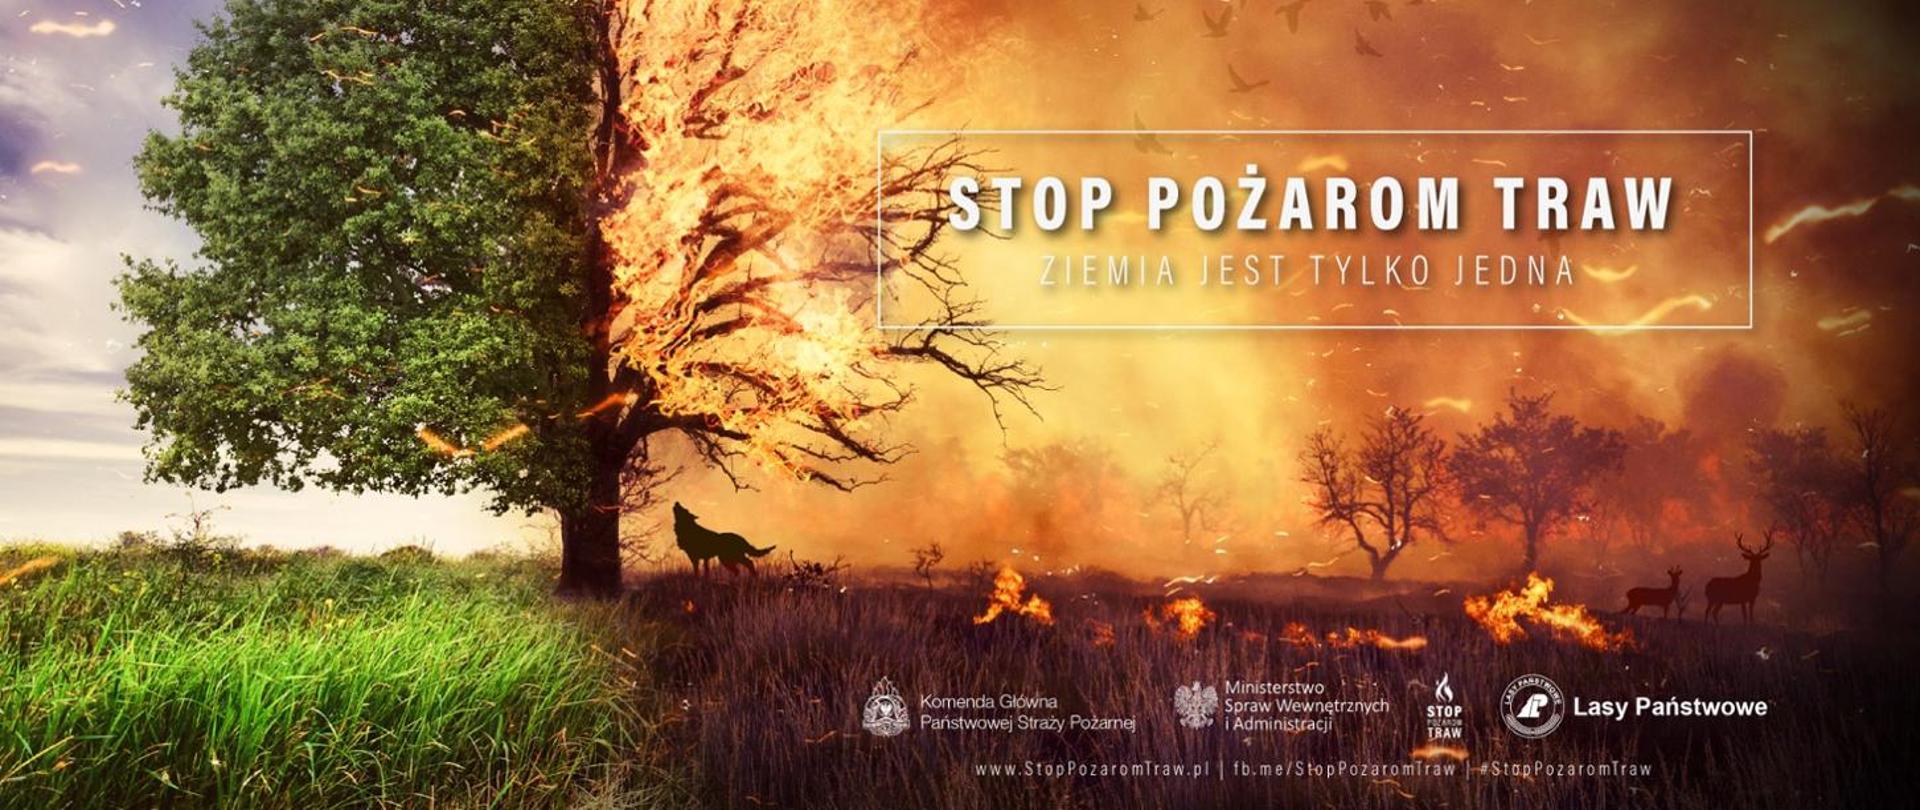 Zdjęcie przedstawia plakat akcji "Stop pożarom traw", Od lewej strony, na 1/3 powierzchni grafiki widać bujną łąkę z dużym drzewem, które w połowie jest ogarnięte płomieniami. Pozostałe 2/3 grafiki przedstawia tą samą przestrzeń, ale w płomieniach i zasnute dymem. 